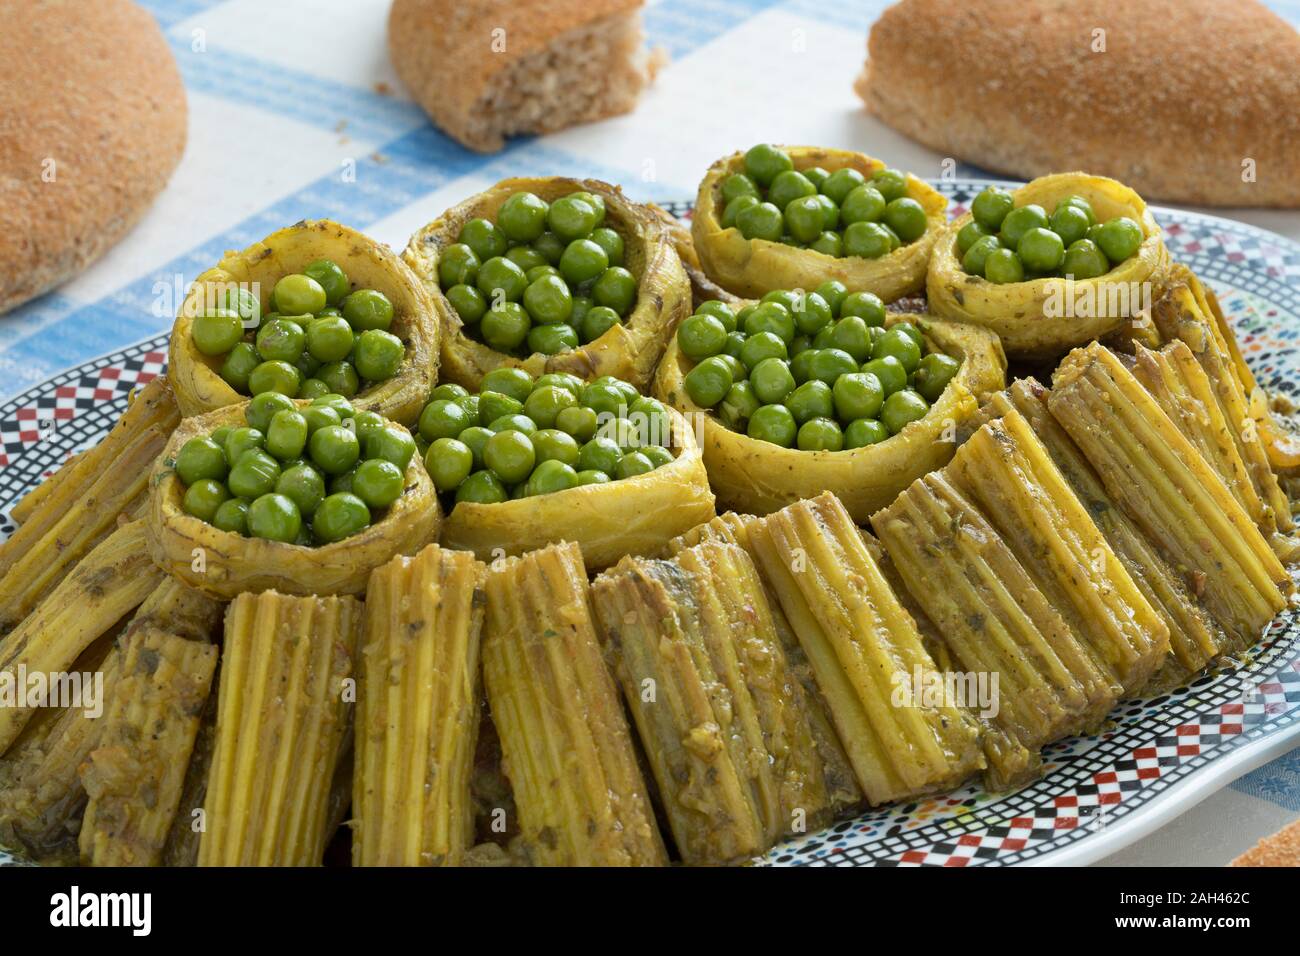 Plat marocain avec le Cardon, cœurs d'artichaut farcis avec des pois verts et des morceaux de pain autour de close up Banque D'Images